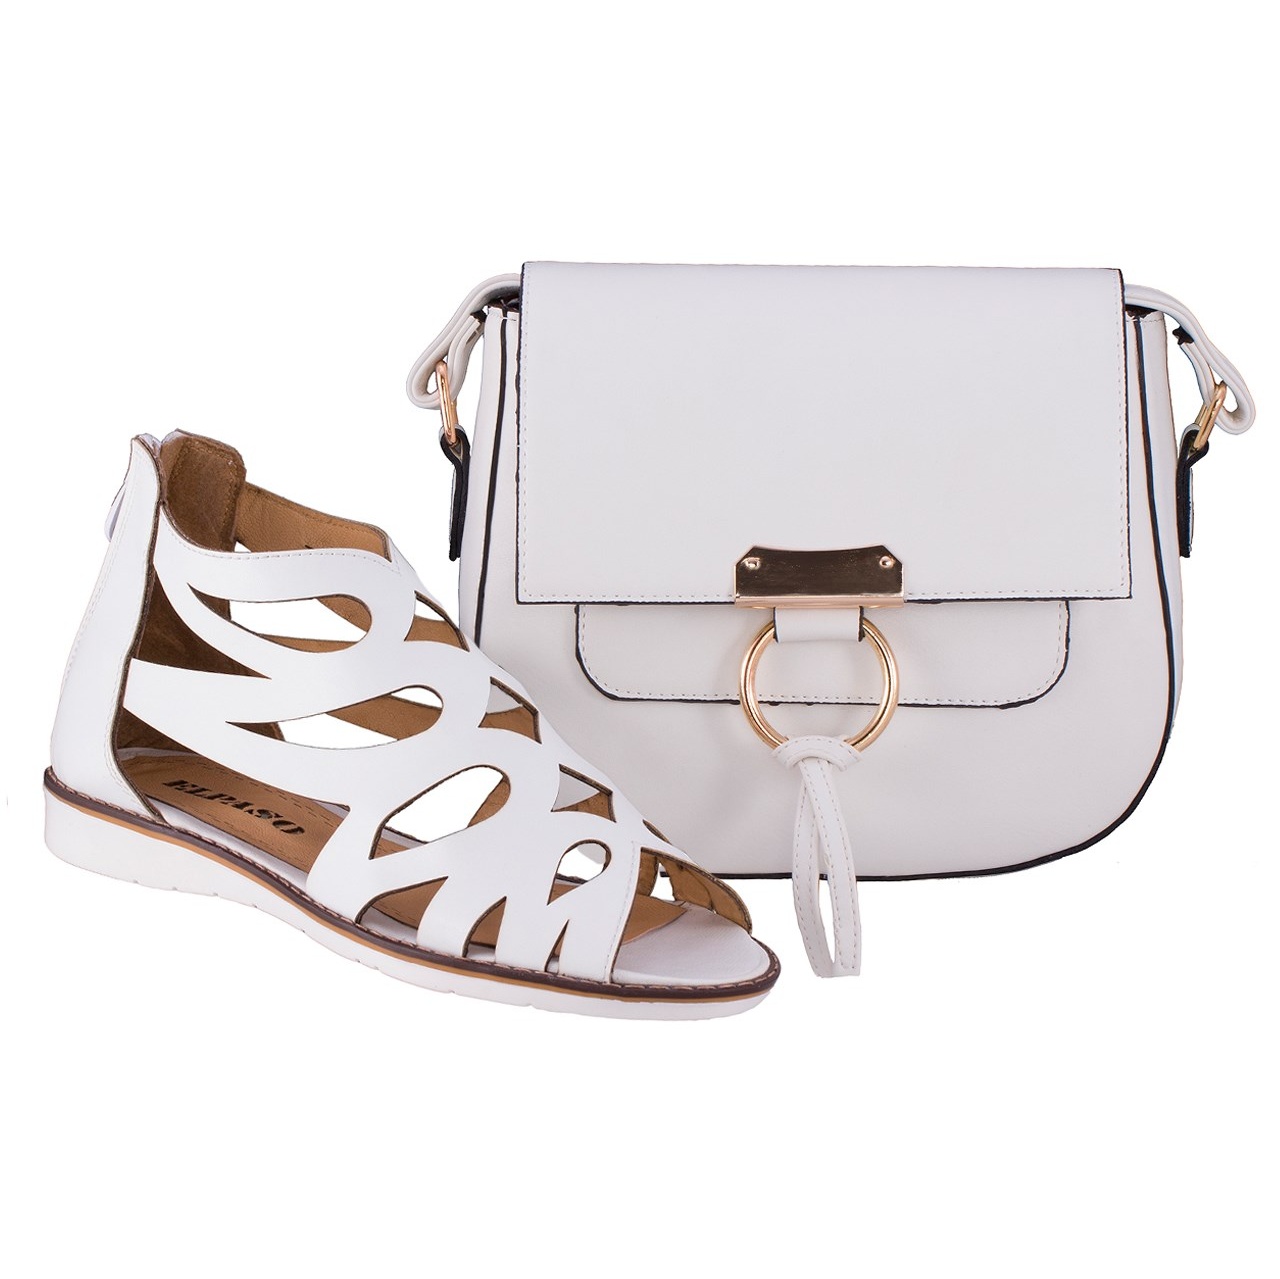 ست کیف و کفش زنانه ال پاسو مدل اشکی سفید 130